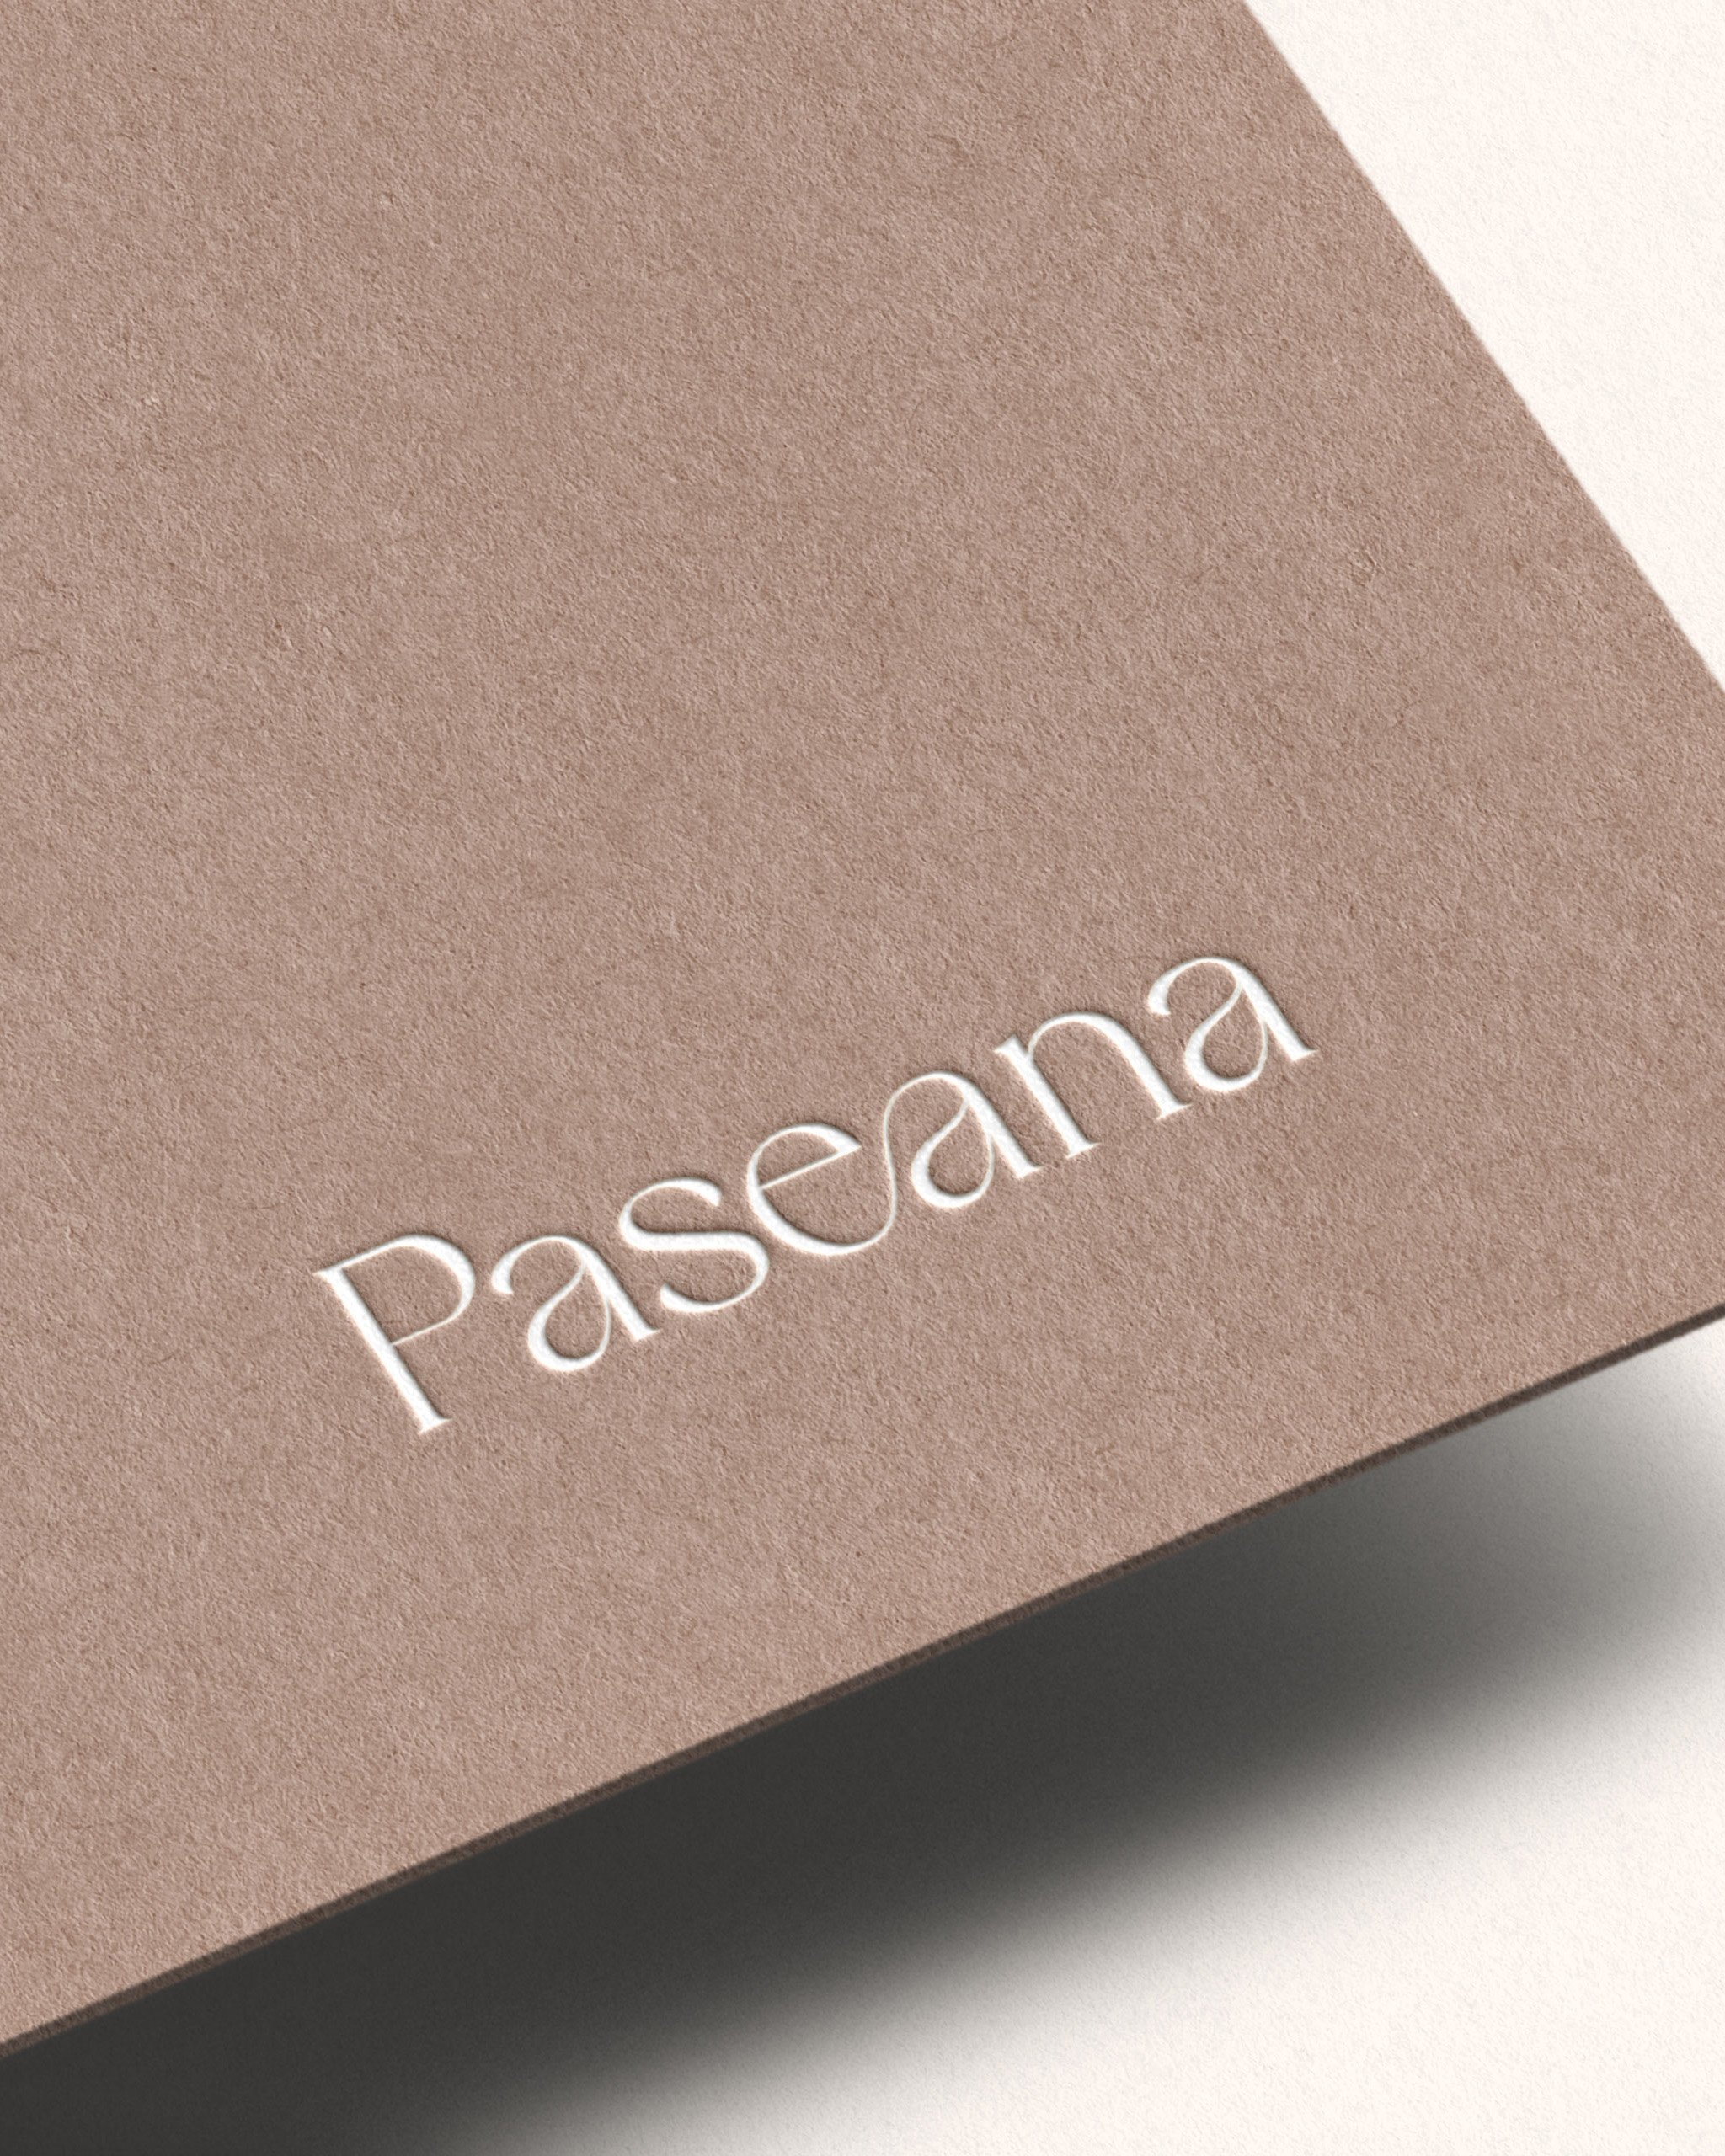 PASEANA_Logo.jpg